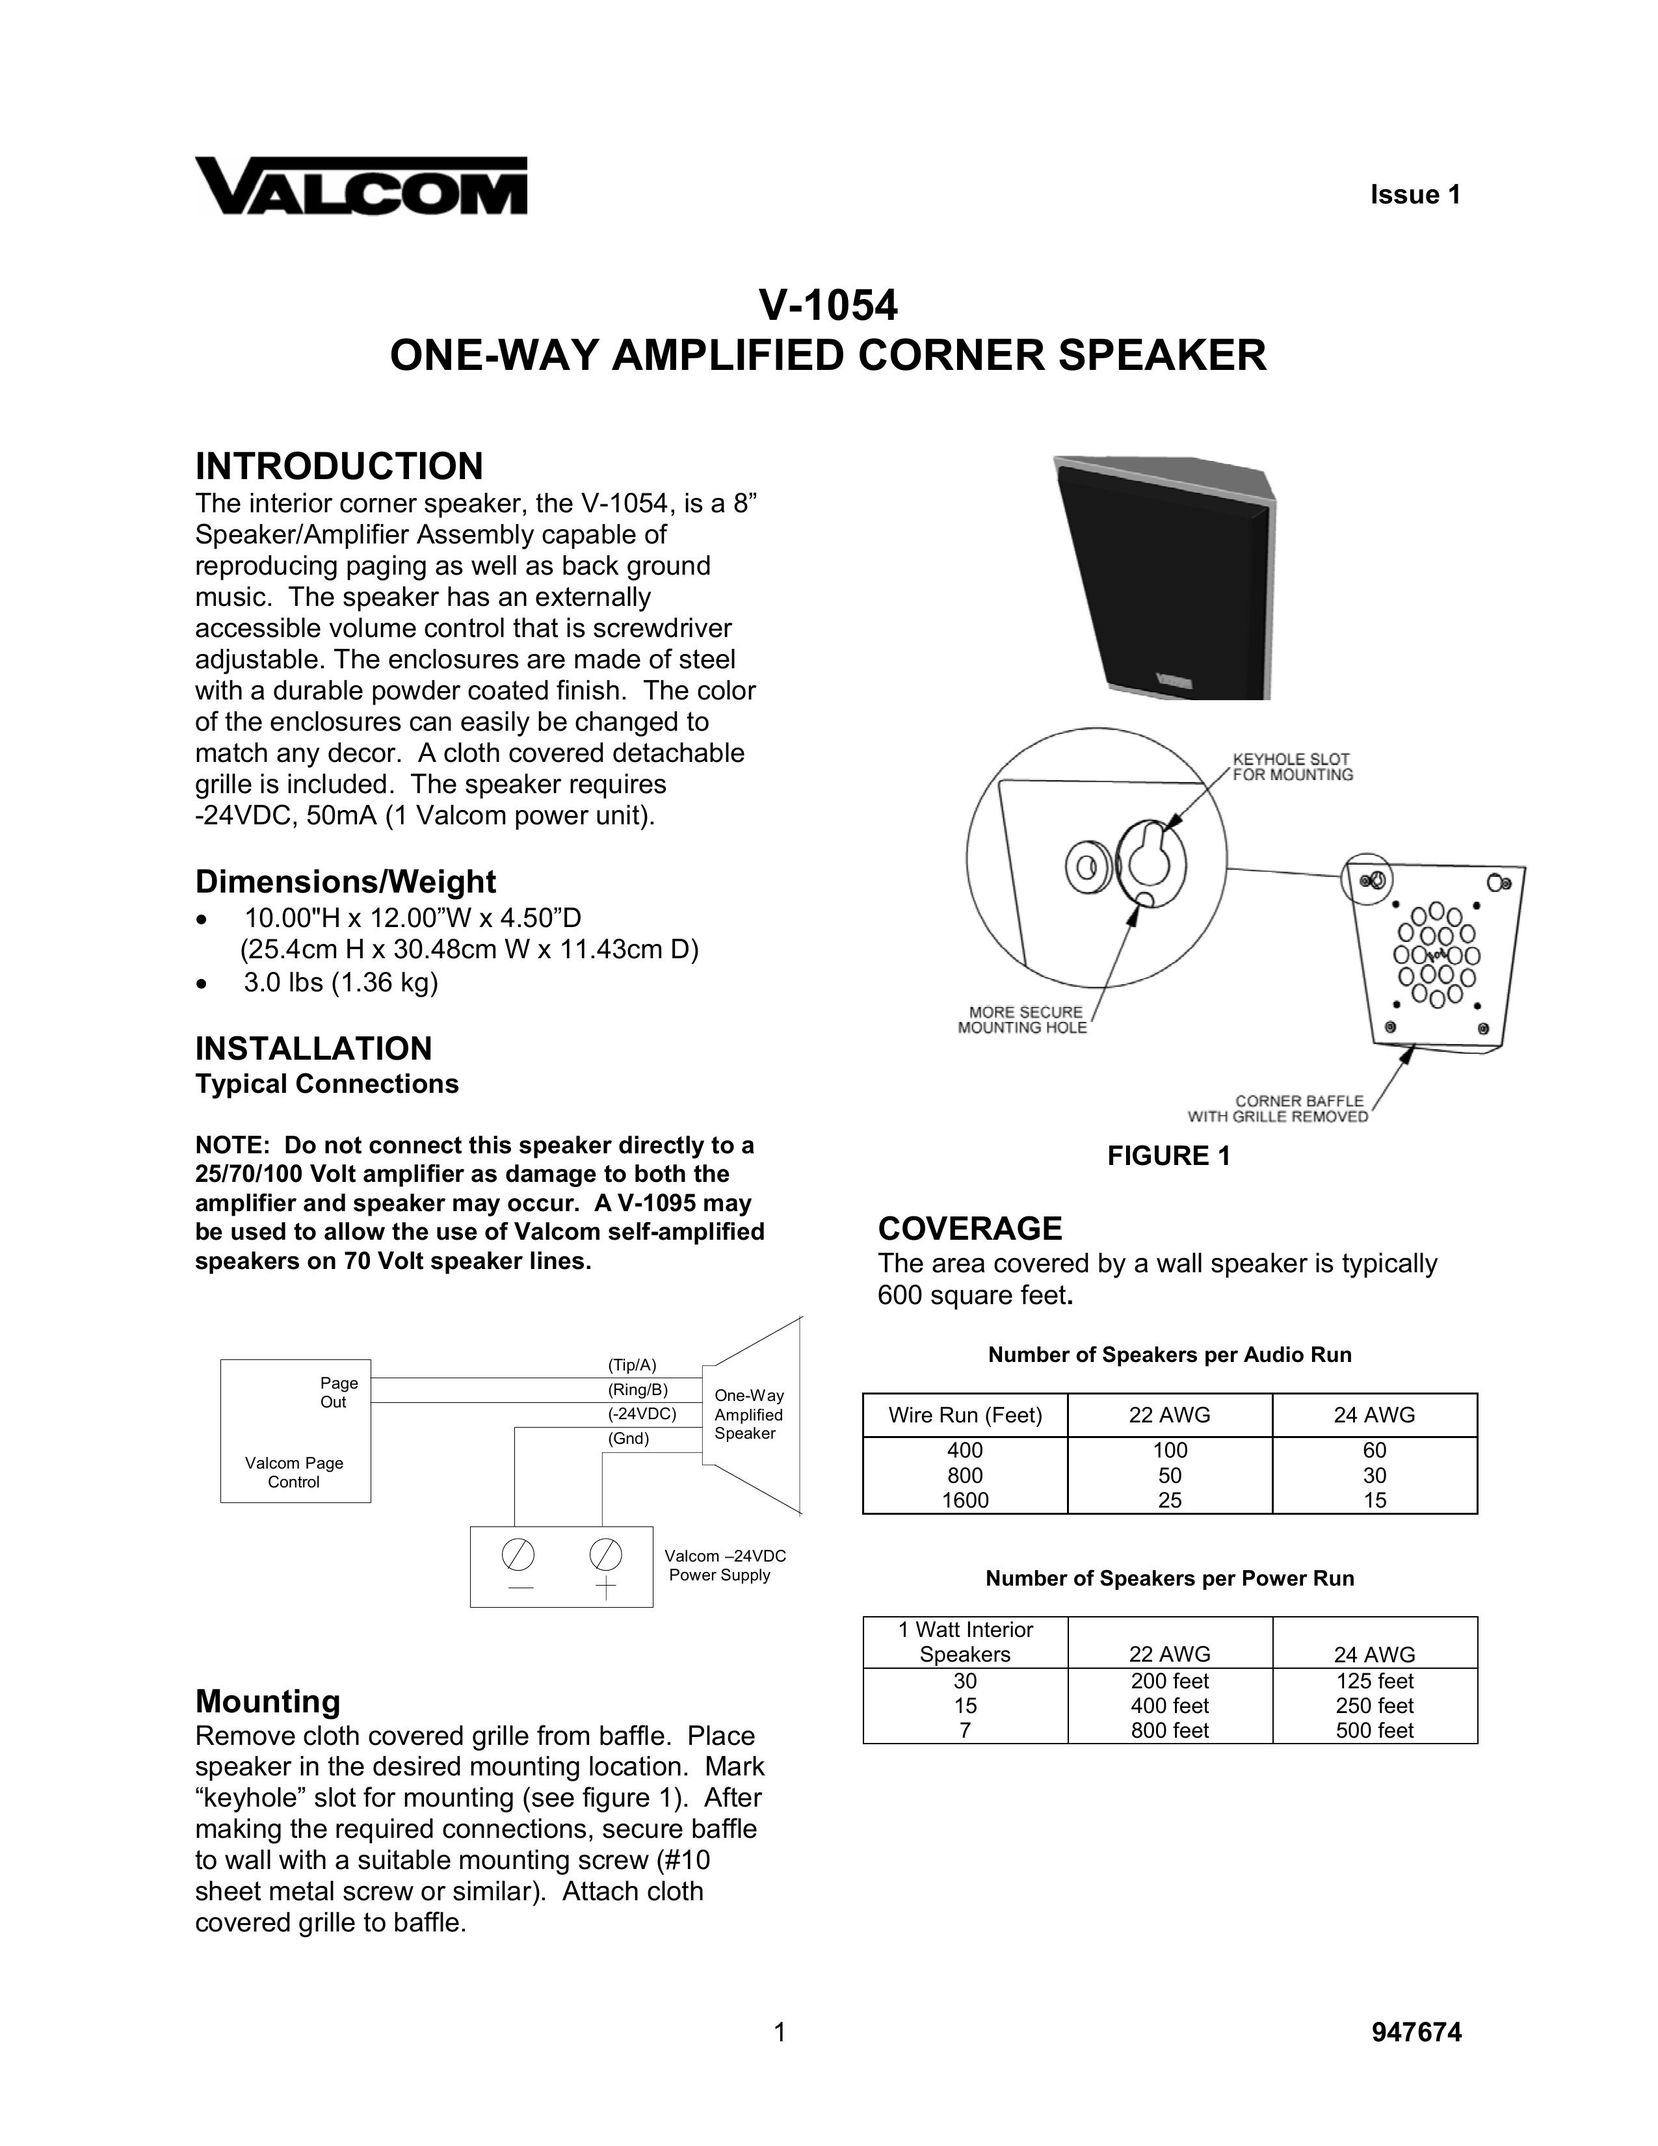 Valcom V-1054 Speaker User Manual